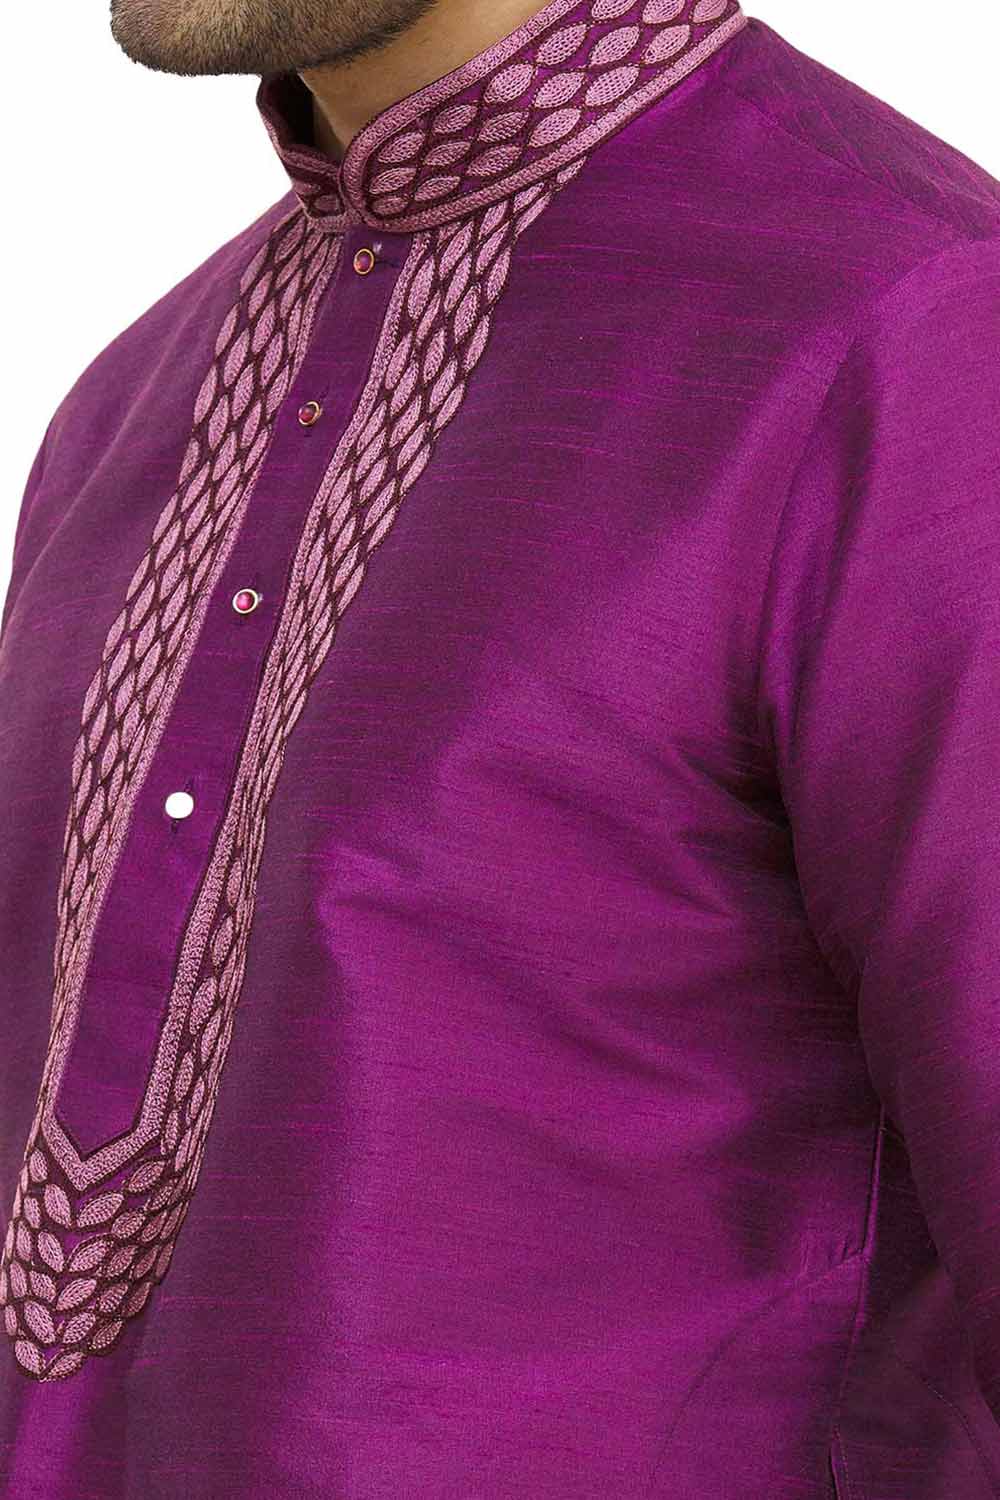 Men's Purple Cotton Embroidered Full Sleeve Kurta Churidar